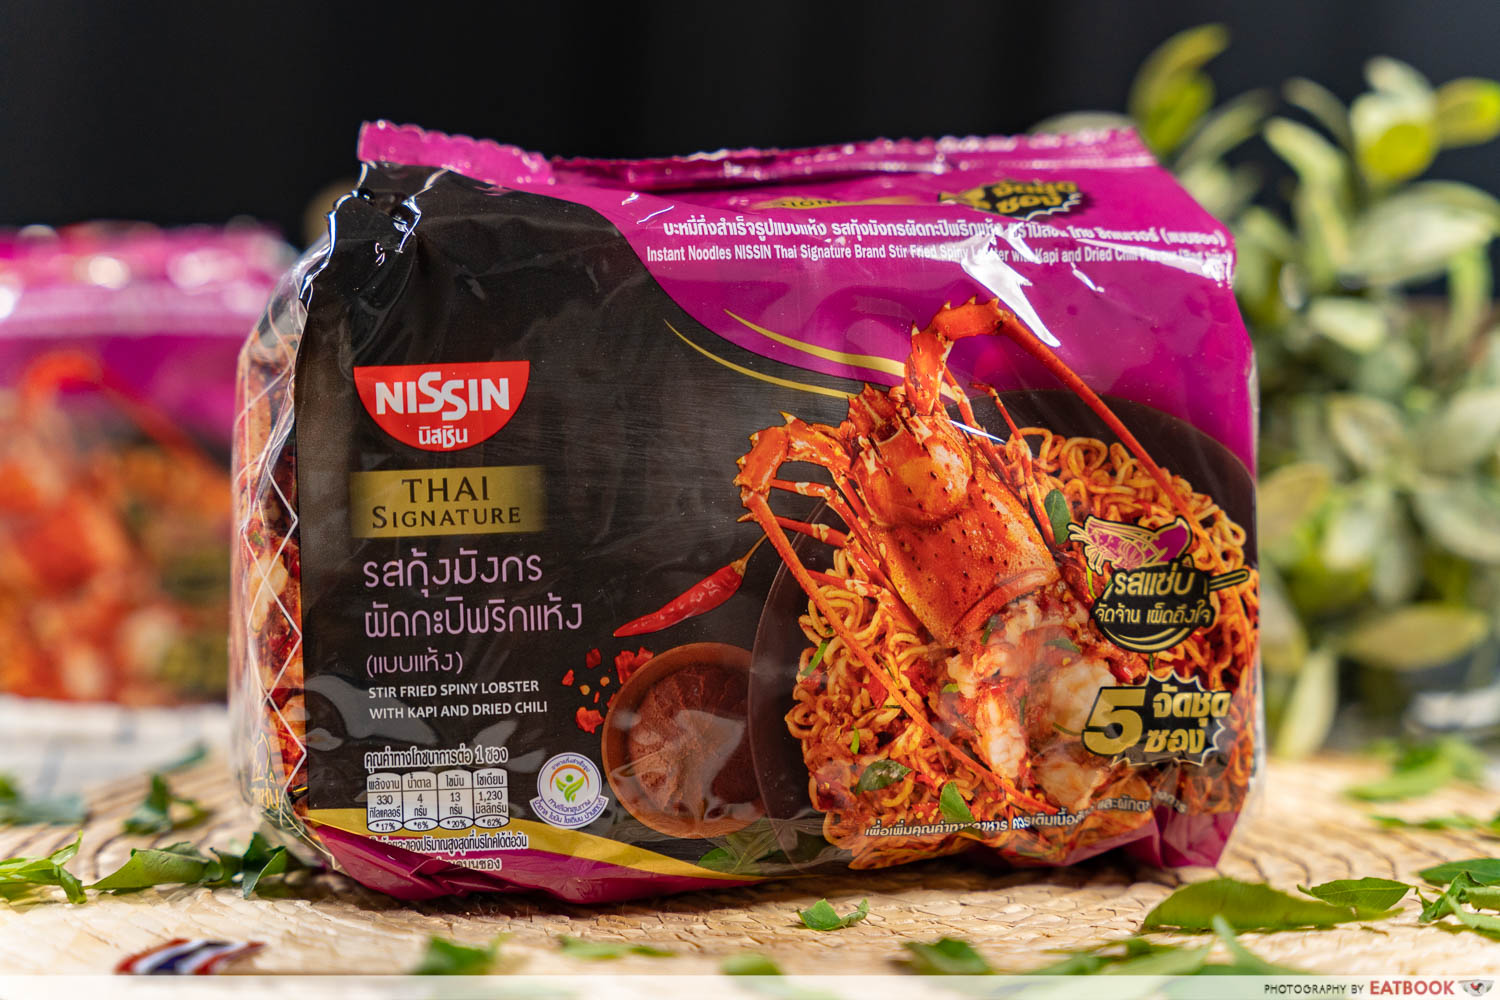 nissin thai stir fried spiny lobster noodles